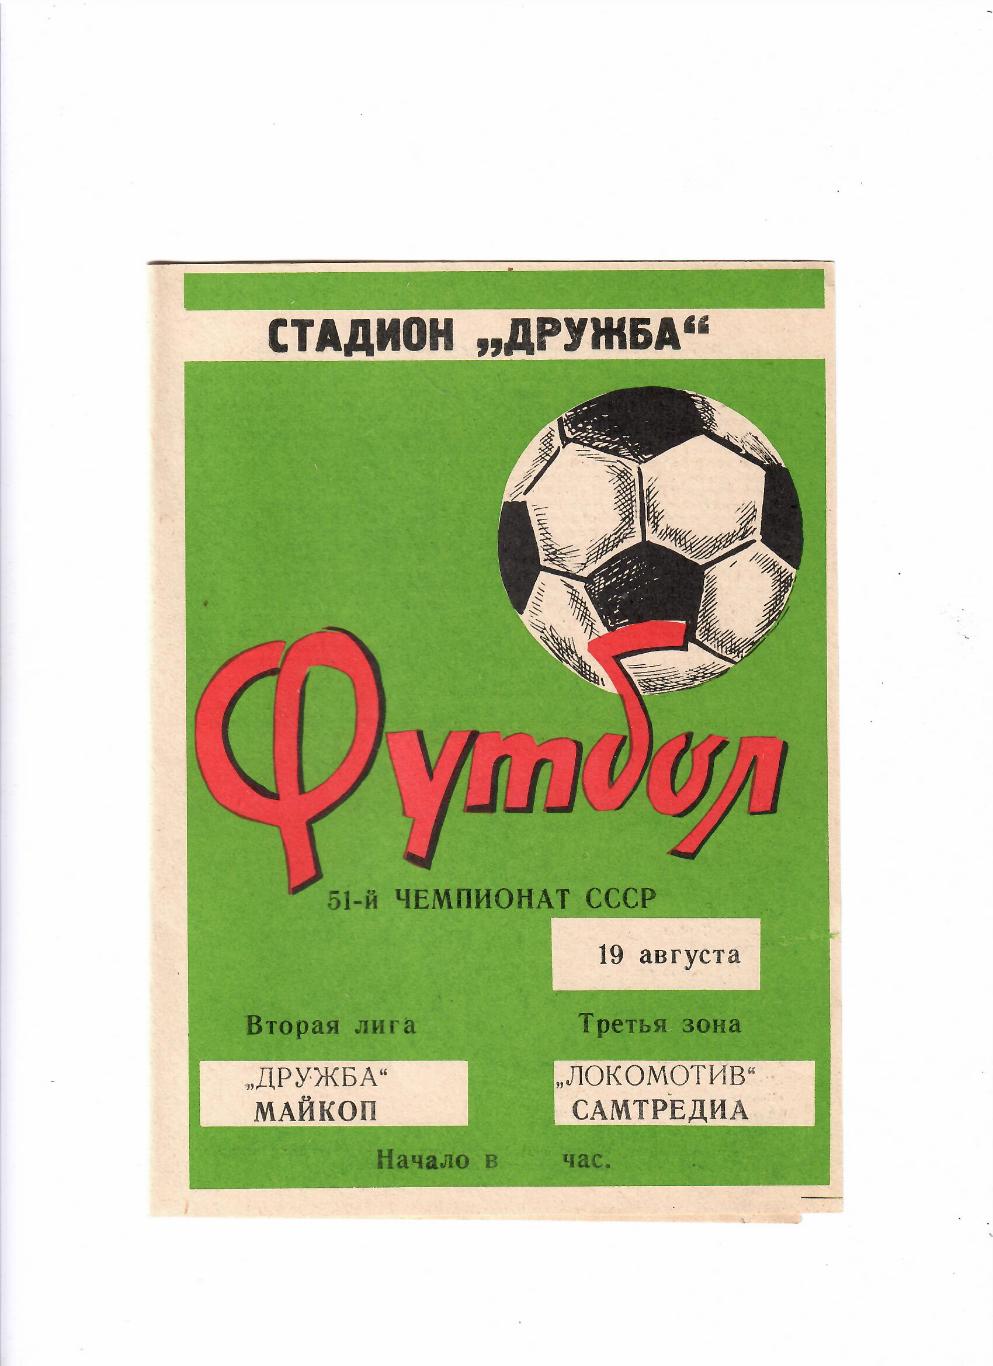 Дружба Майкоп-Локомотив Самтредиа 1988